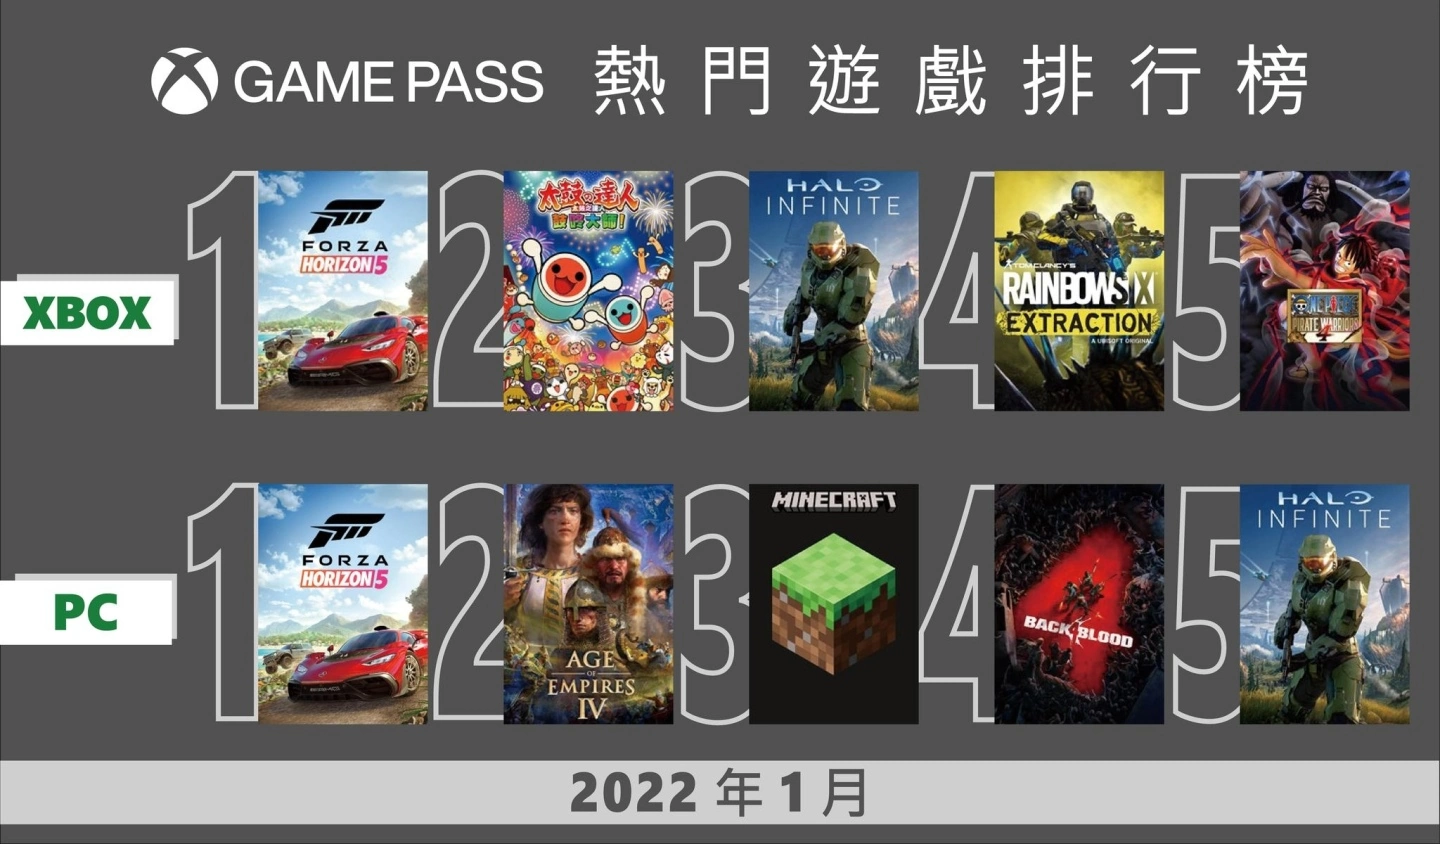 PC Game Pass 限时买一送一，Xbox 全新游戏阵容与热门榜单大公开 